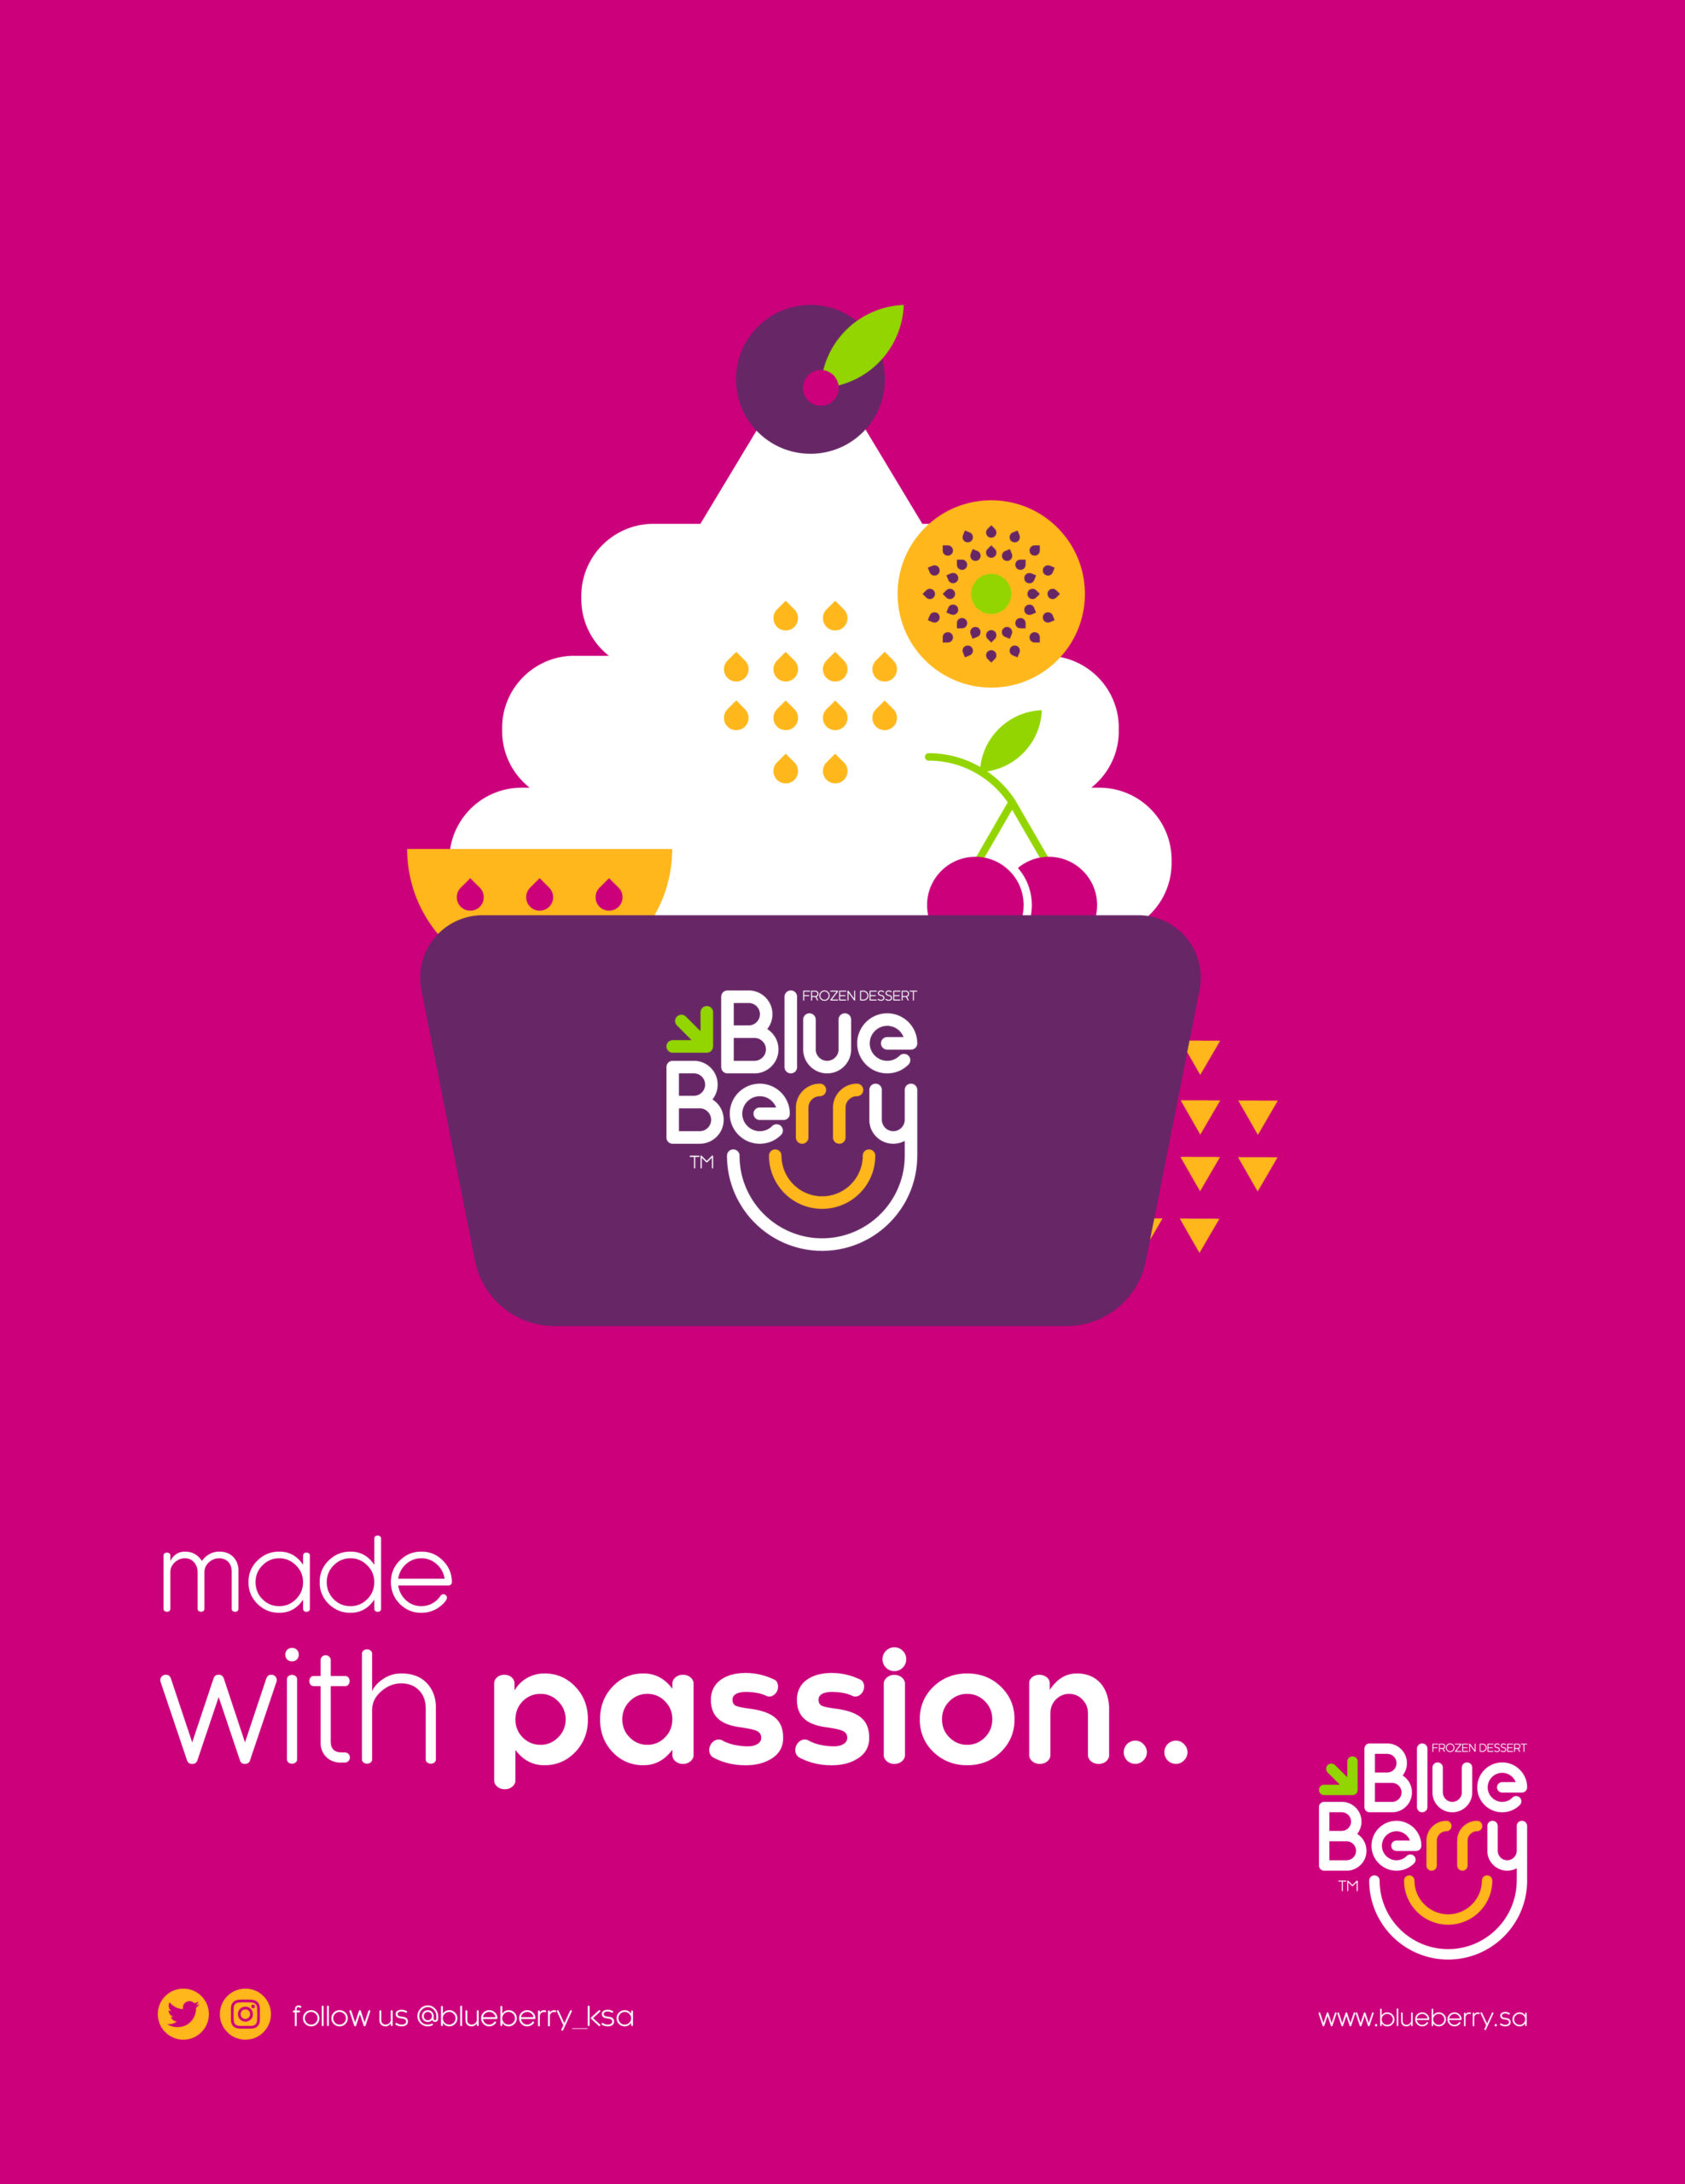 Blueberry-Frozen-Dessert-Branding-By-Millimeter-Creative-Agency-Cover-P01